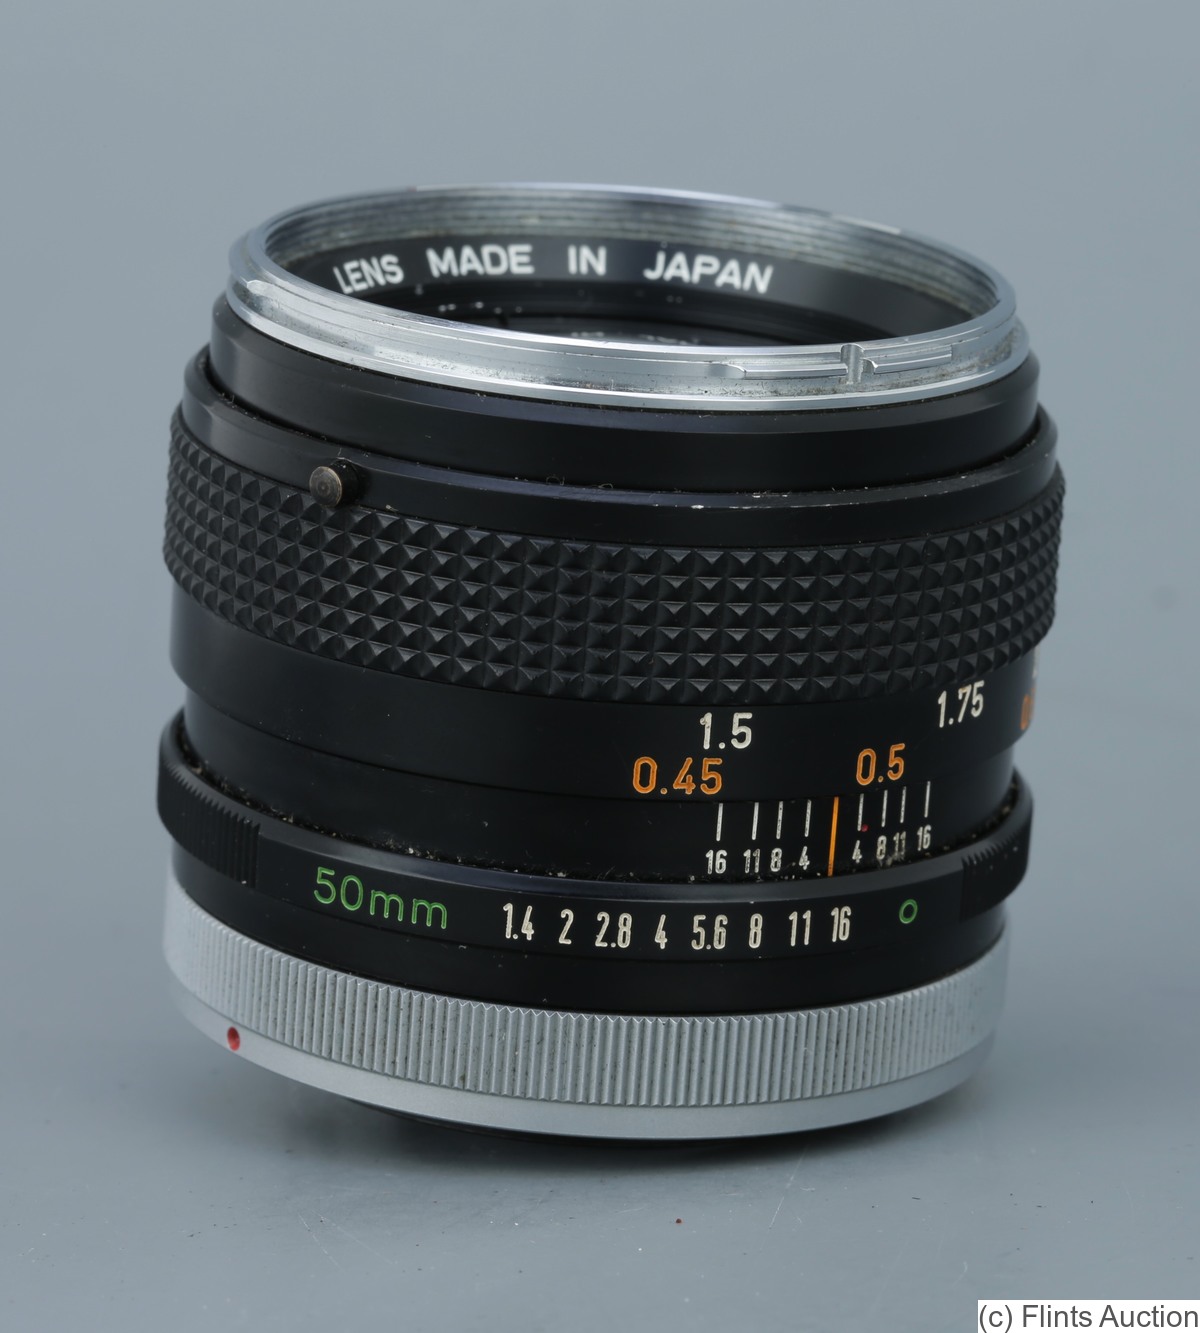 Canon: 50mm (5cm) f1.4 FD camera